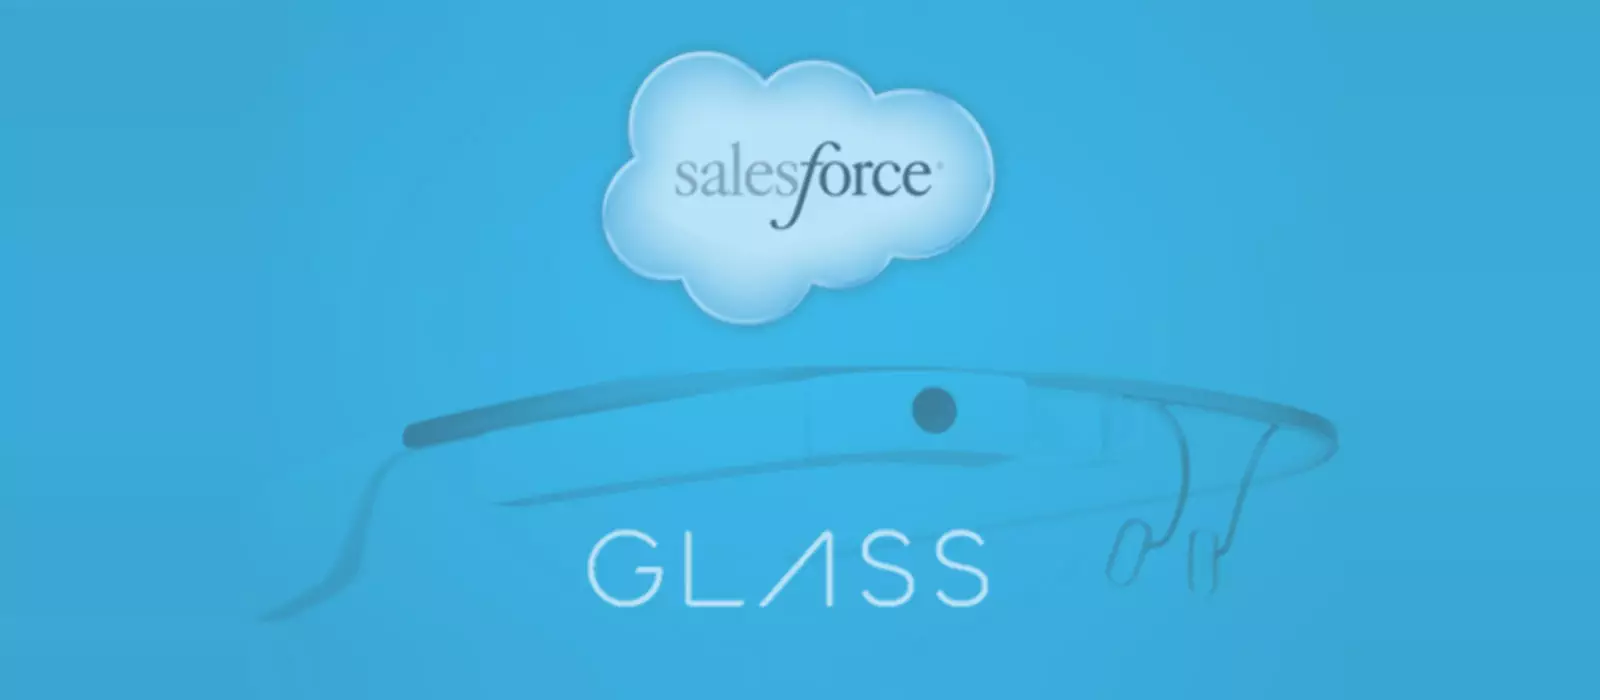 Salesforce Google Glass Wear